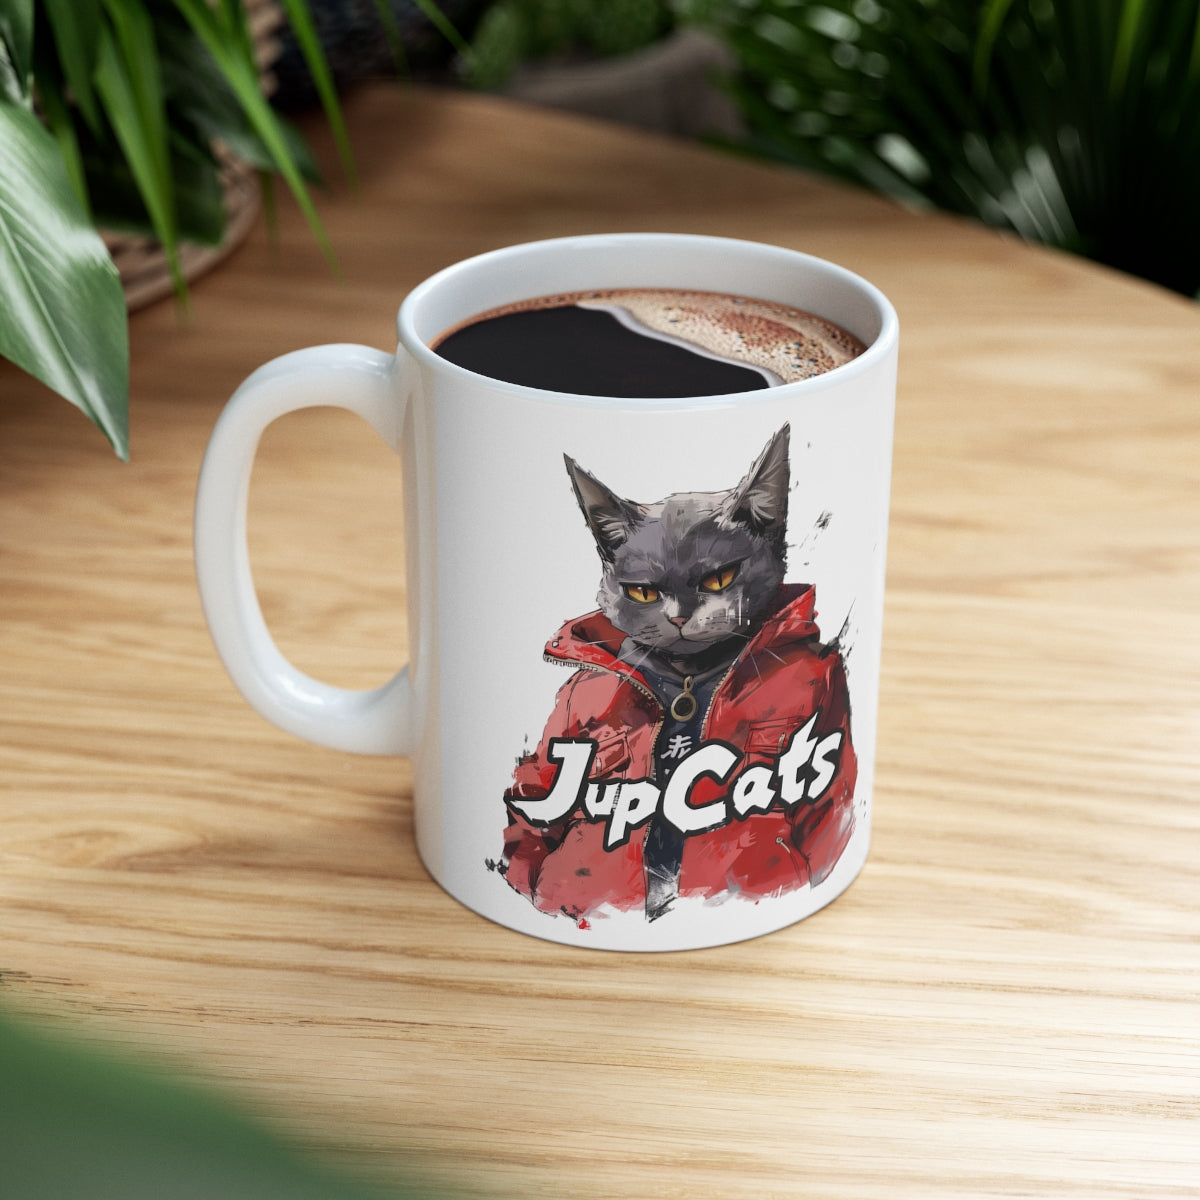 Jup Cat Mug